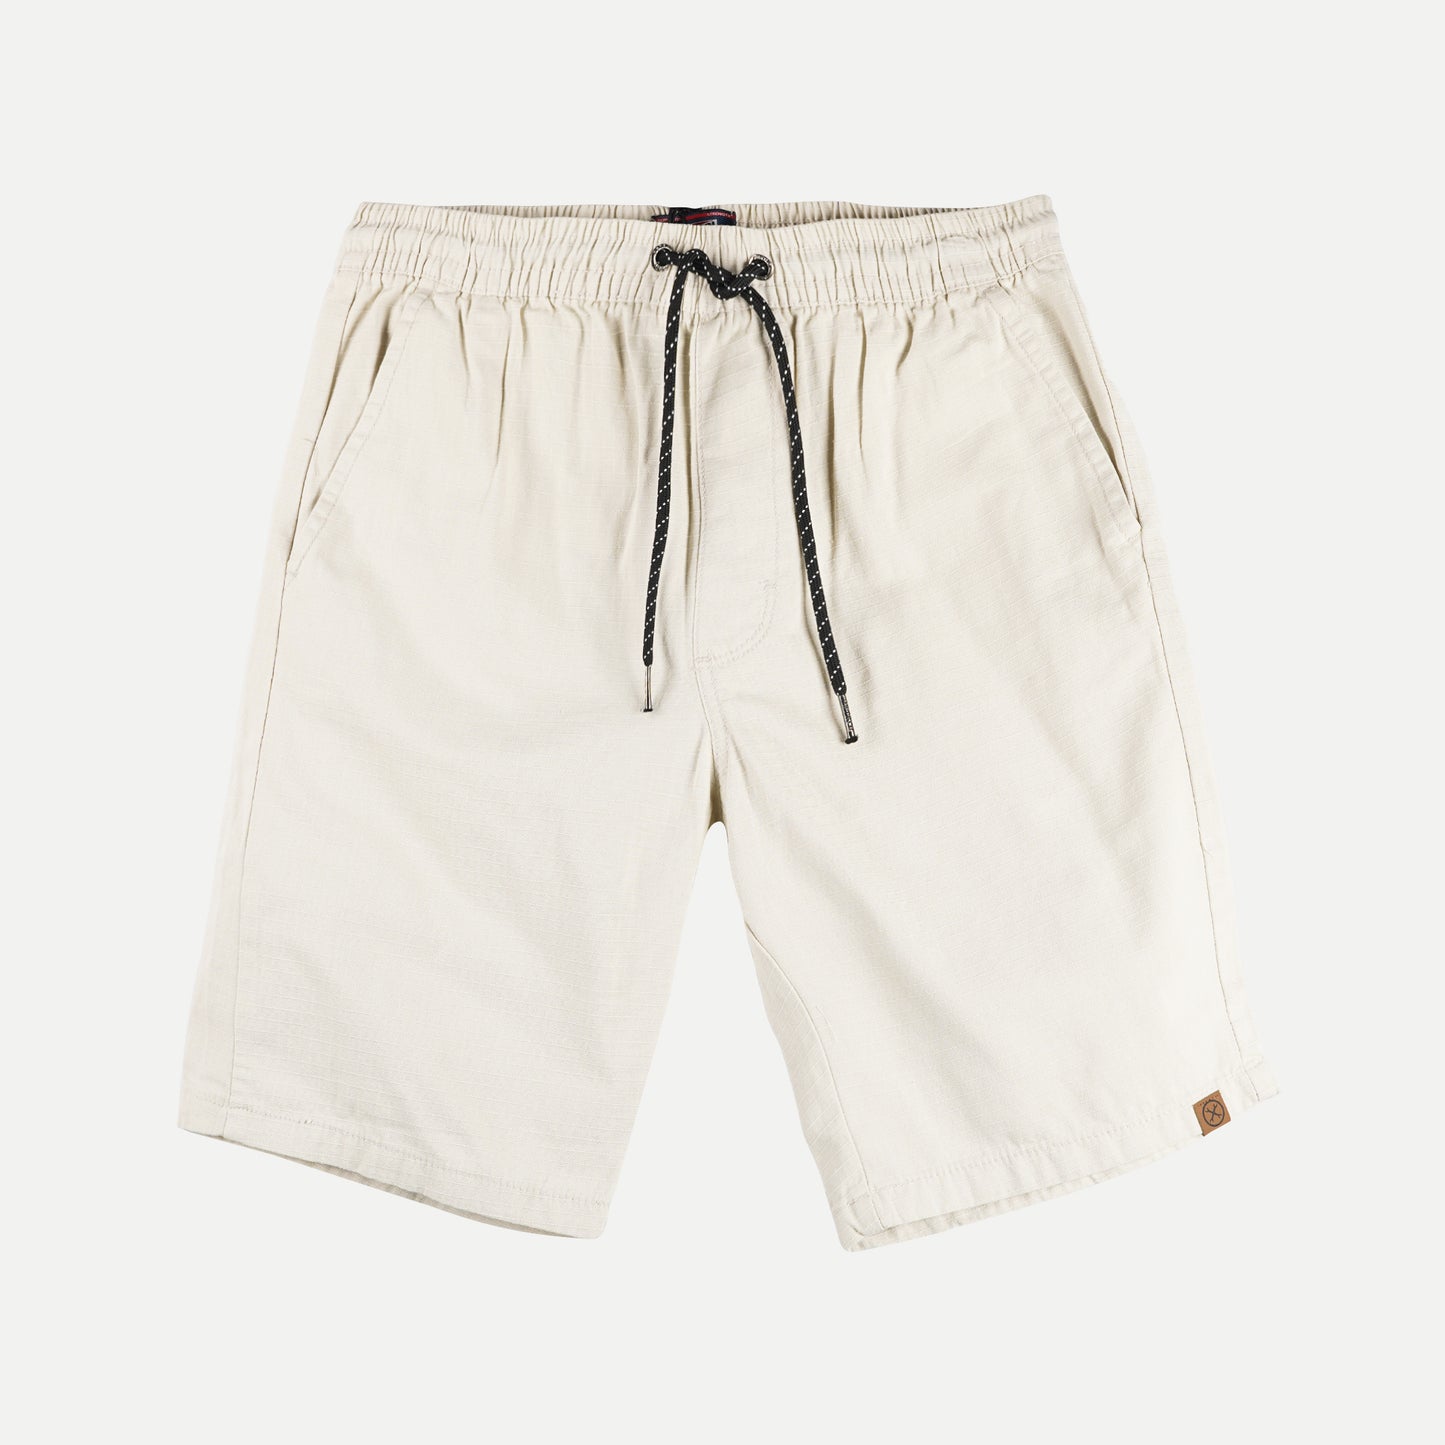 Petrol Basic Non-Denim Jogger Shorts for Men Regular Fitting Garment Wash Fabric Casual short Beige Jogger short for Men 127352 (Beige)